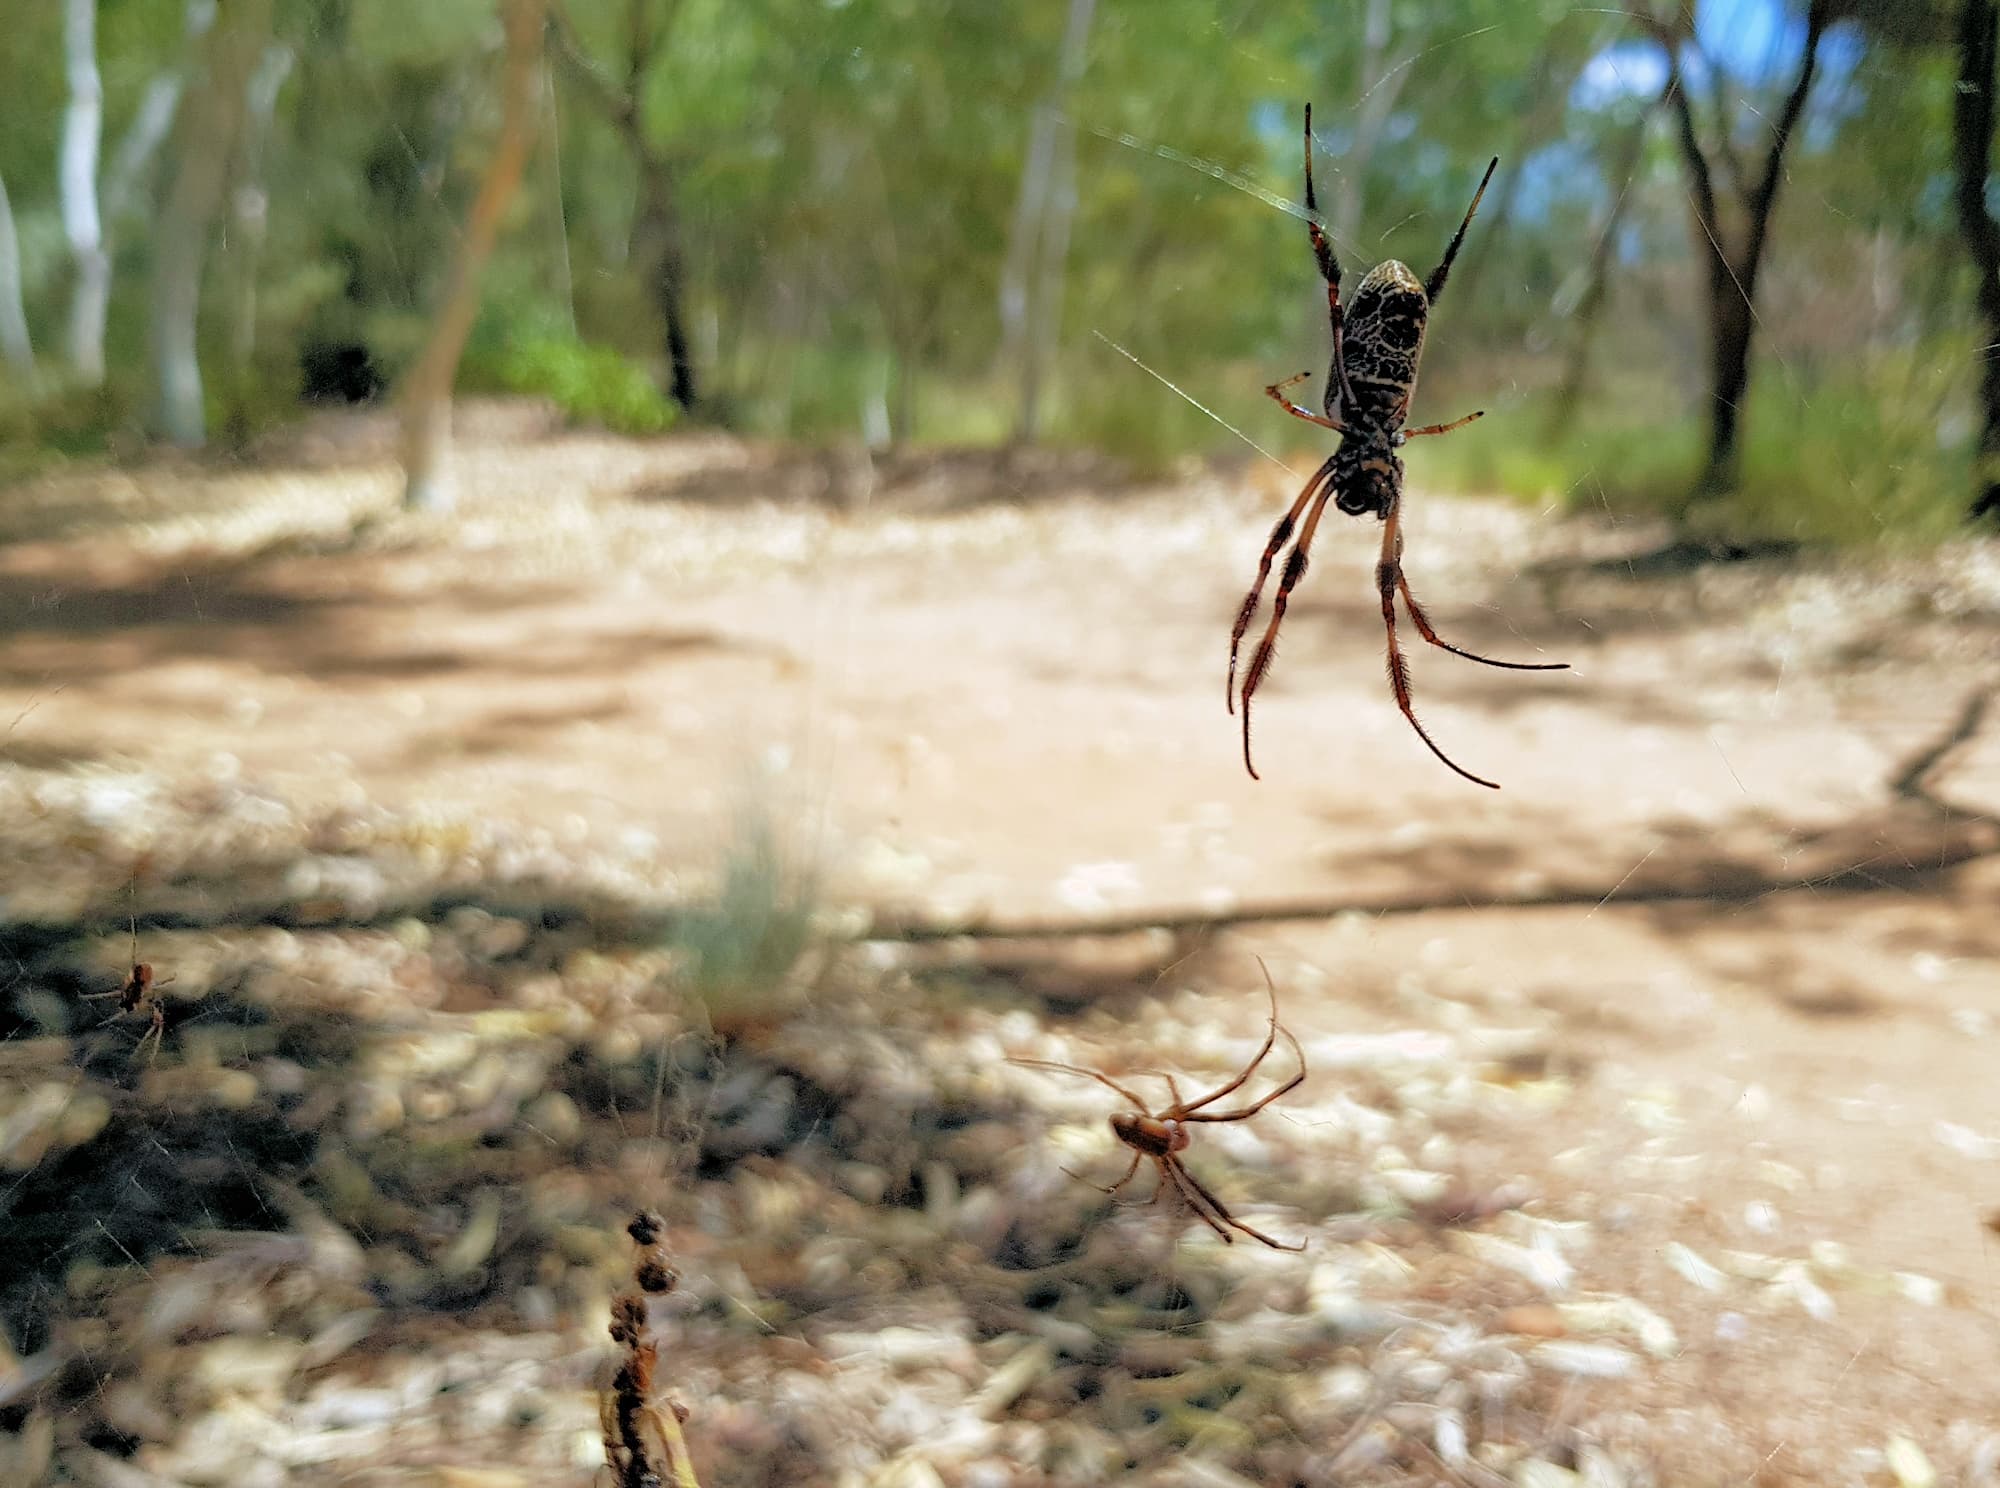 Male and female Australian Golden Orb Weaver Spider (Trichonephila edulis), Alice Springs Desert Park, NT